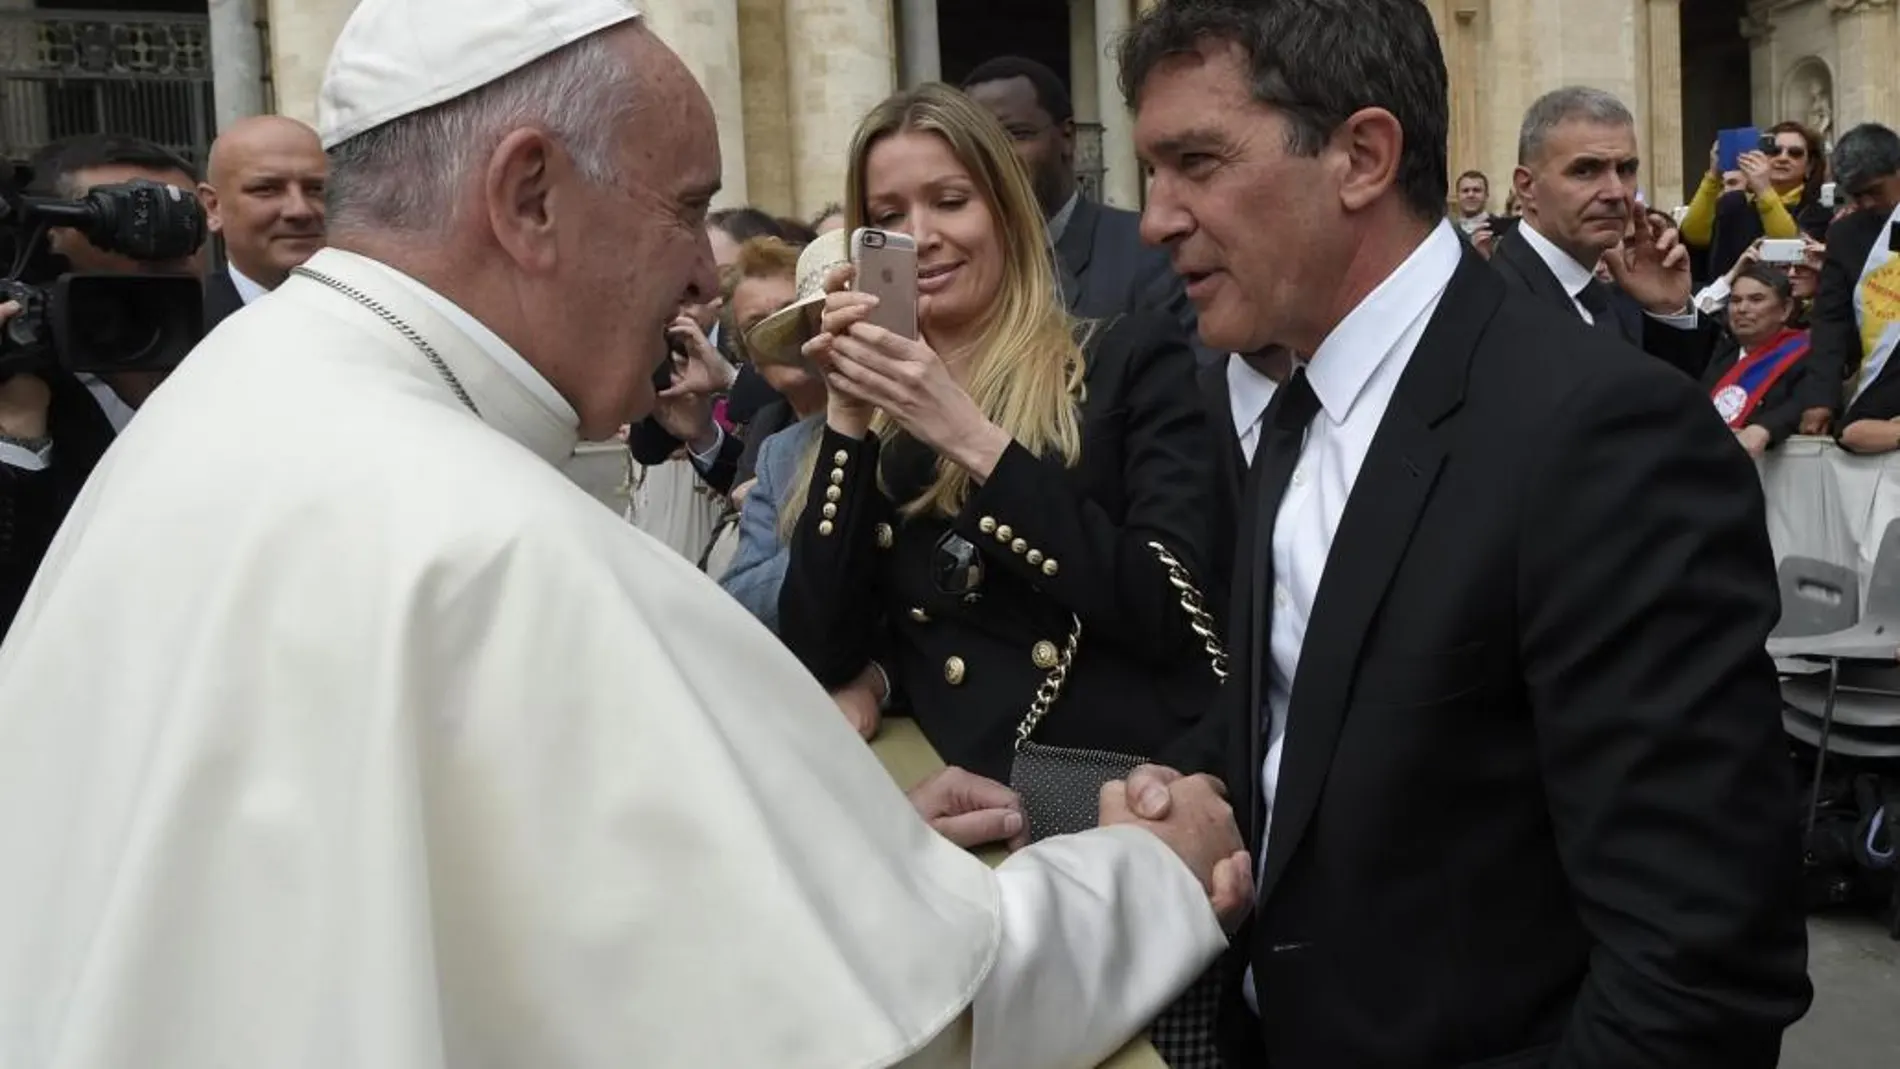 Antonio Banderas, acompañado por su novia Nicole Kimpel, saluda al papa Francisco